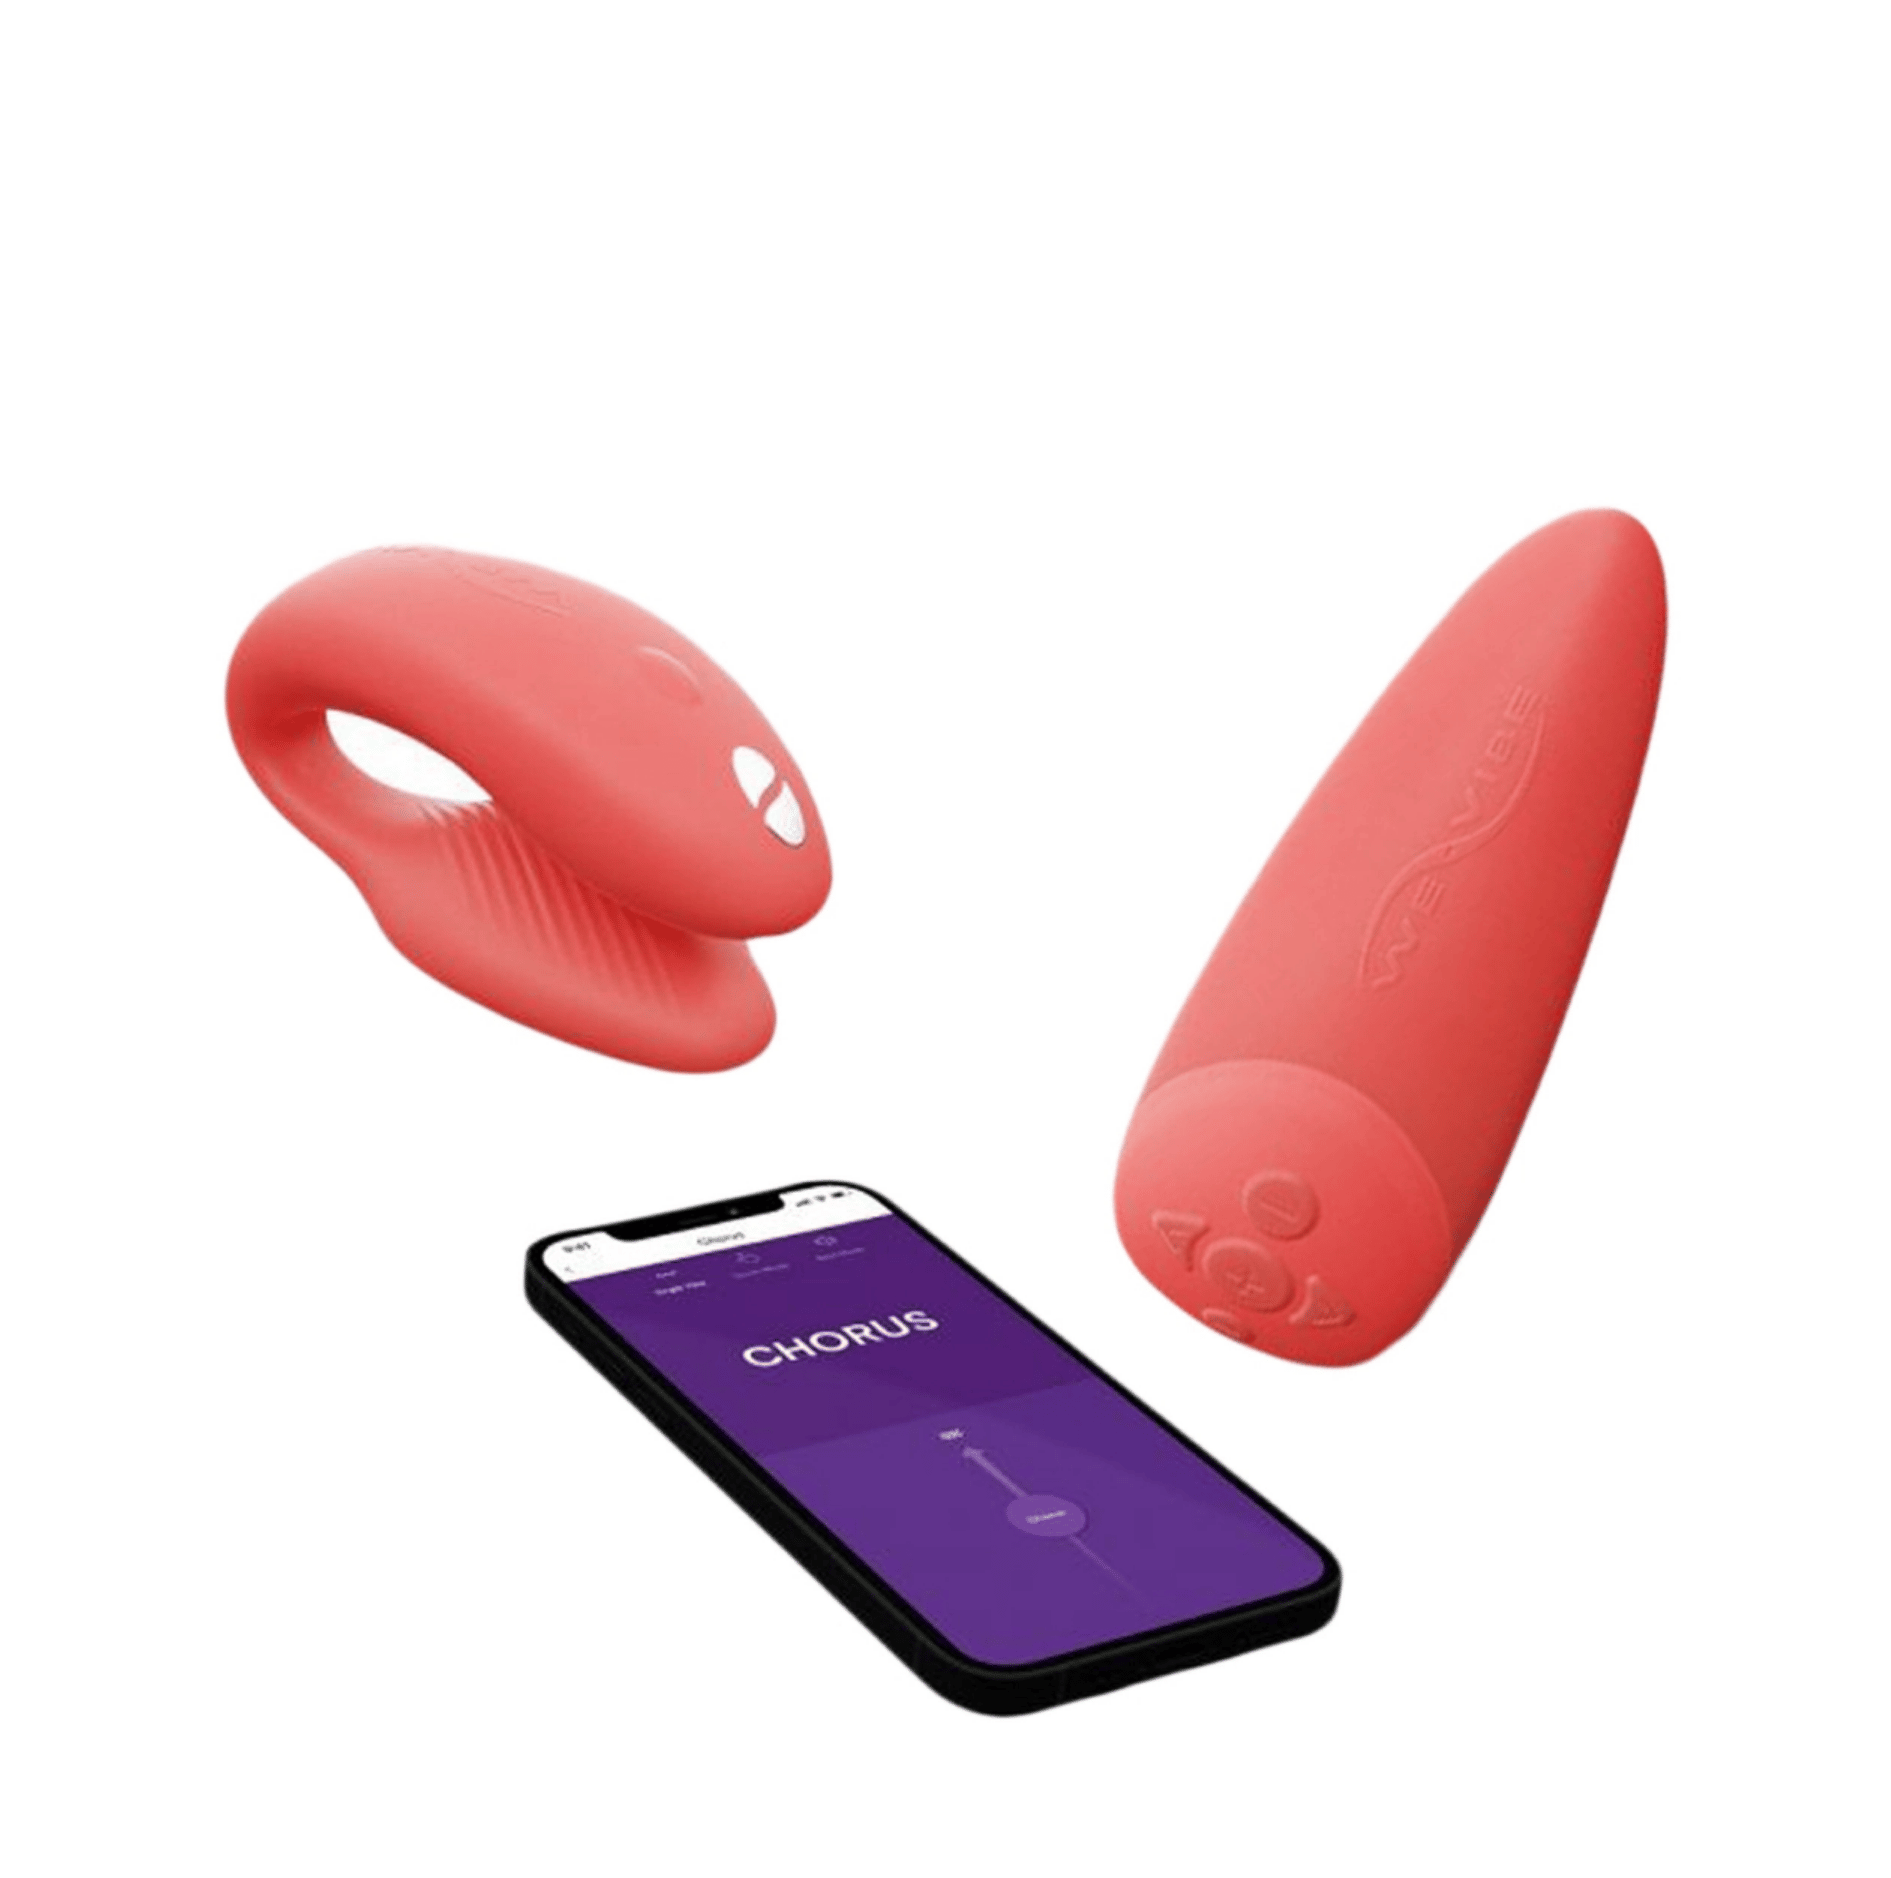 app remote control clitoral vibrator invisible